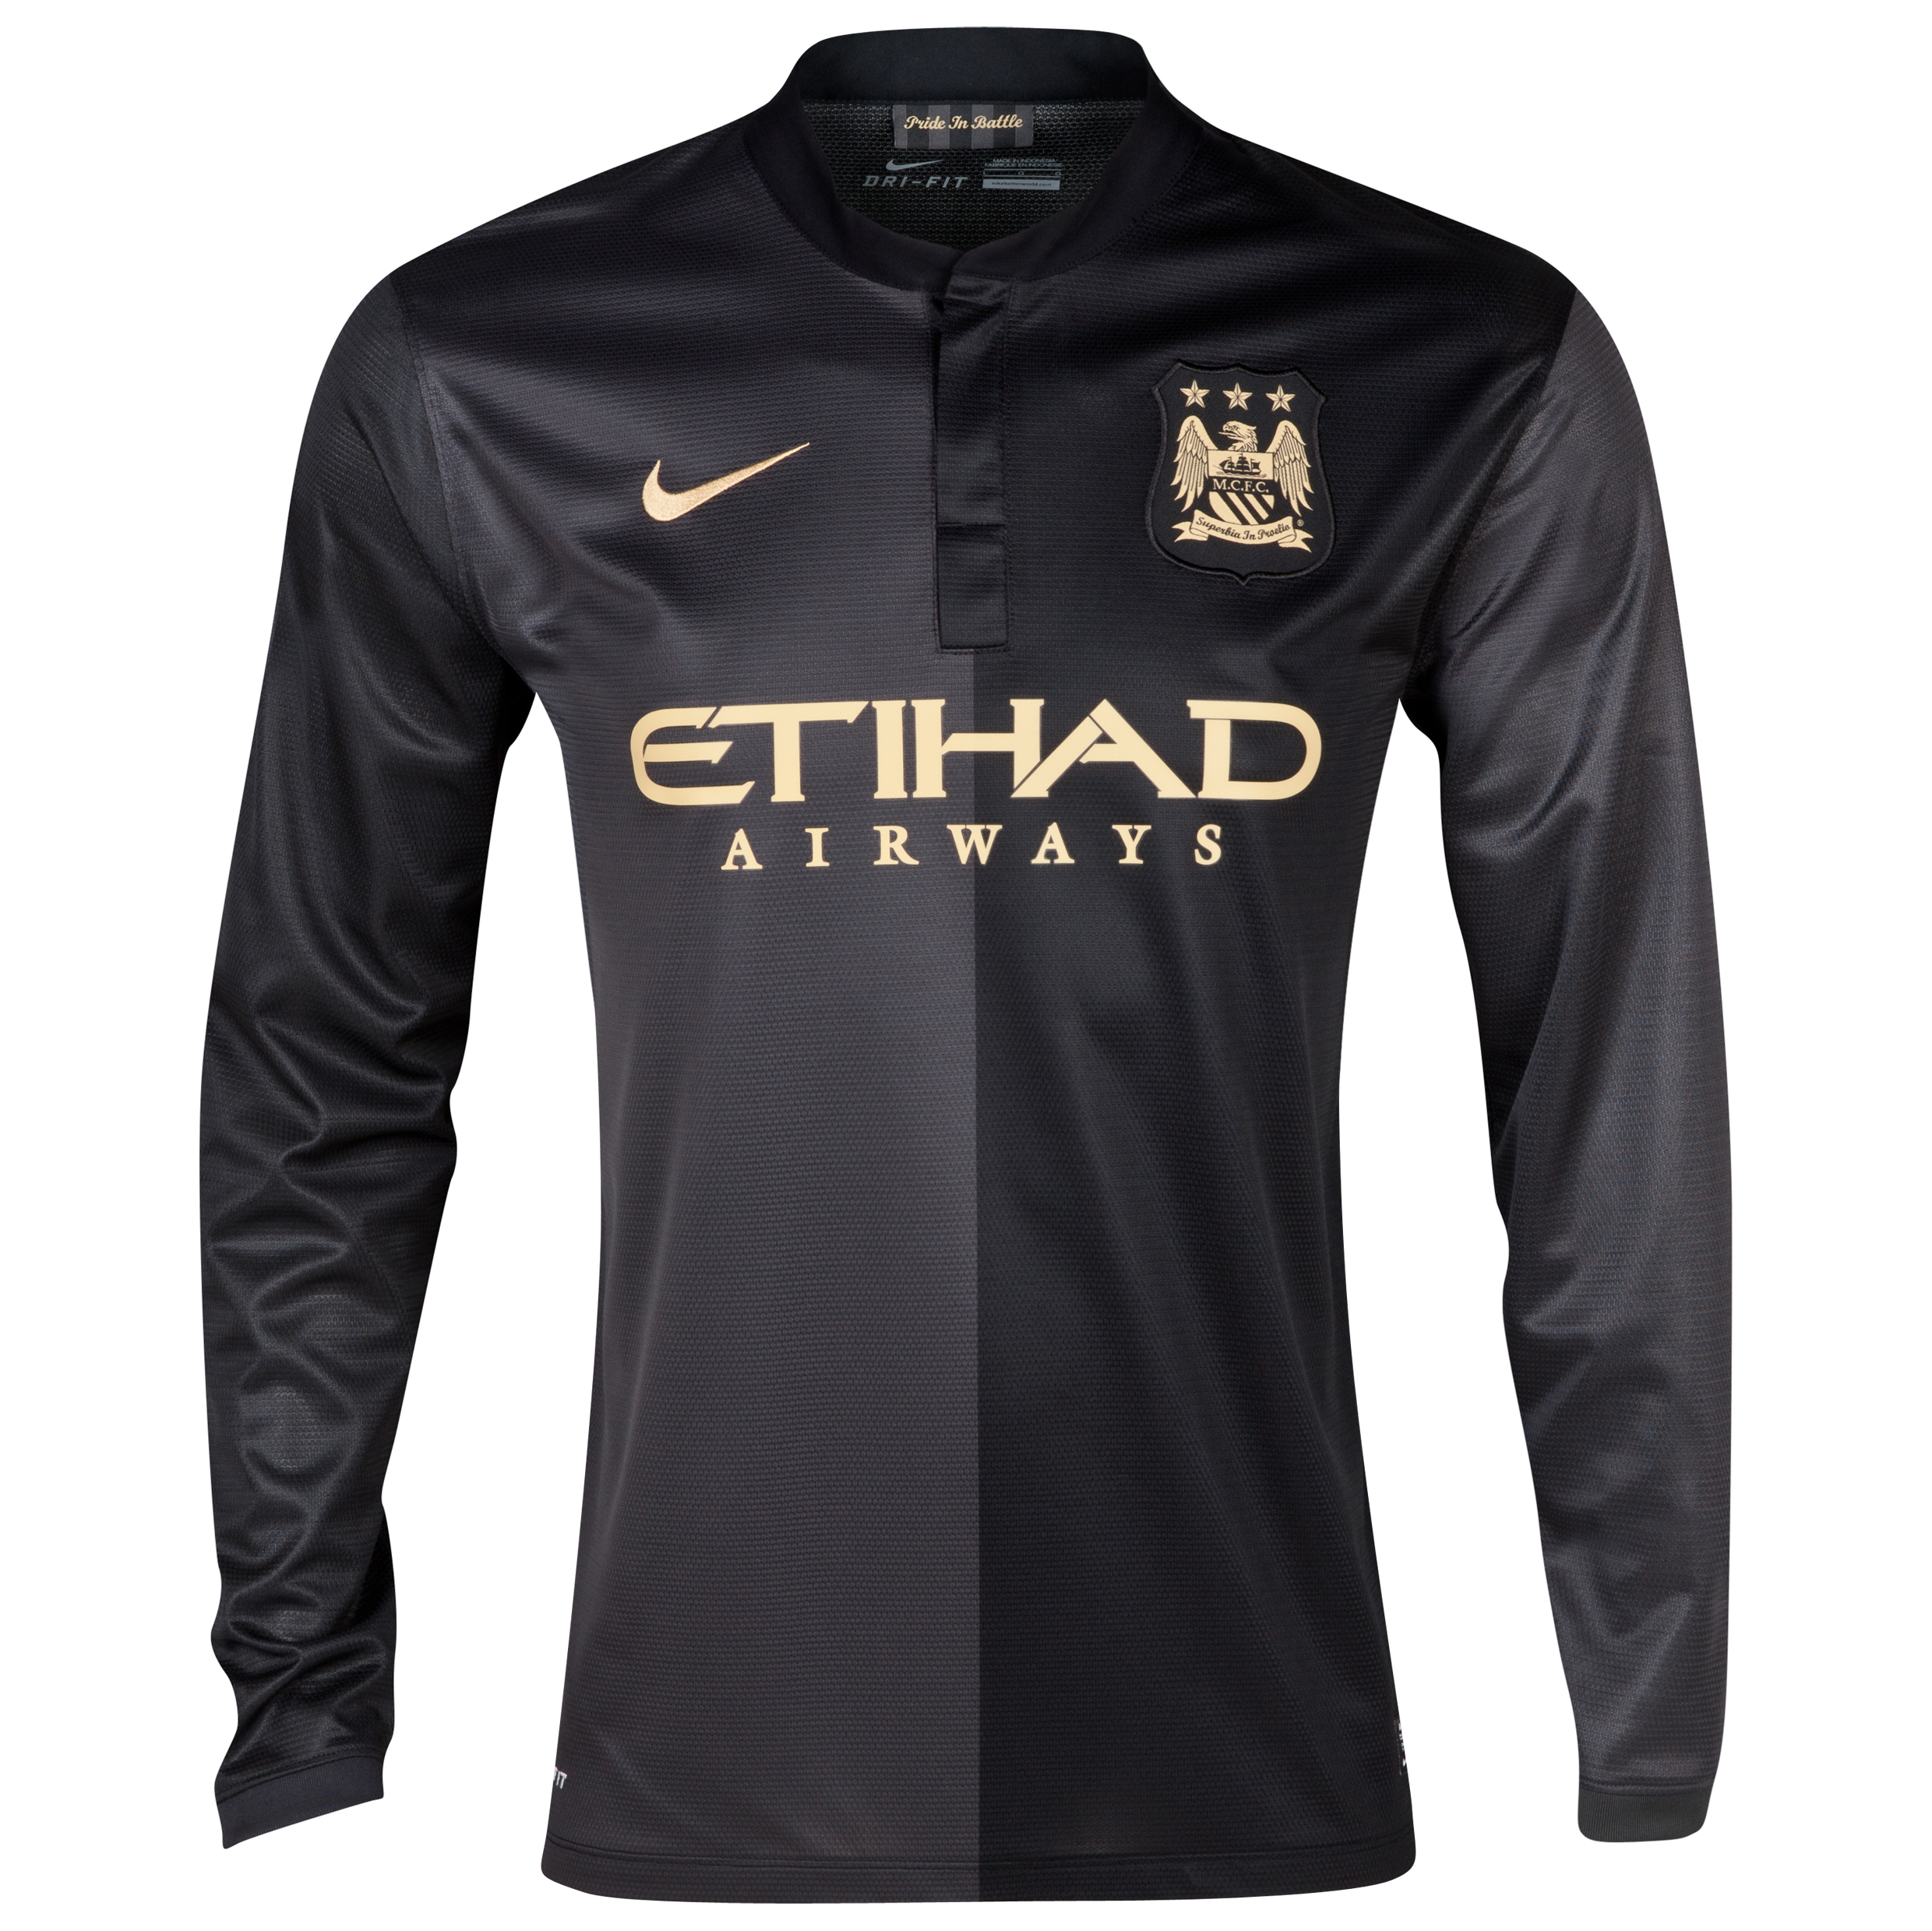 Manchester City Away Shirt 2013/14 - Long Sleeved